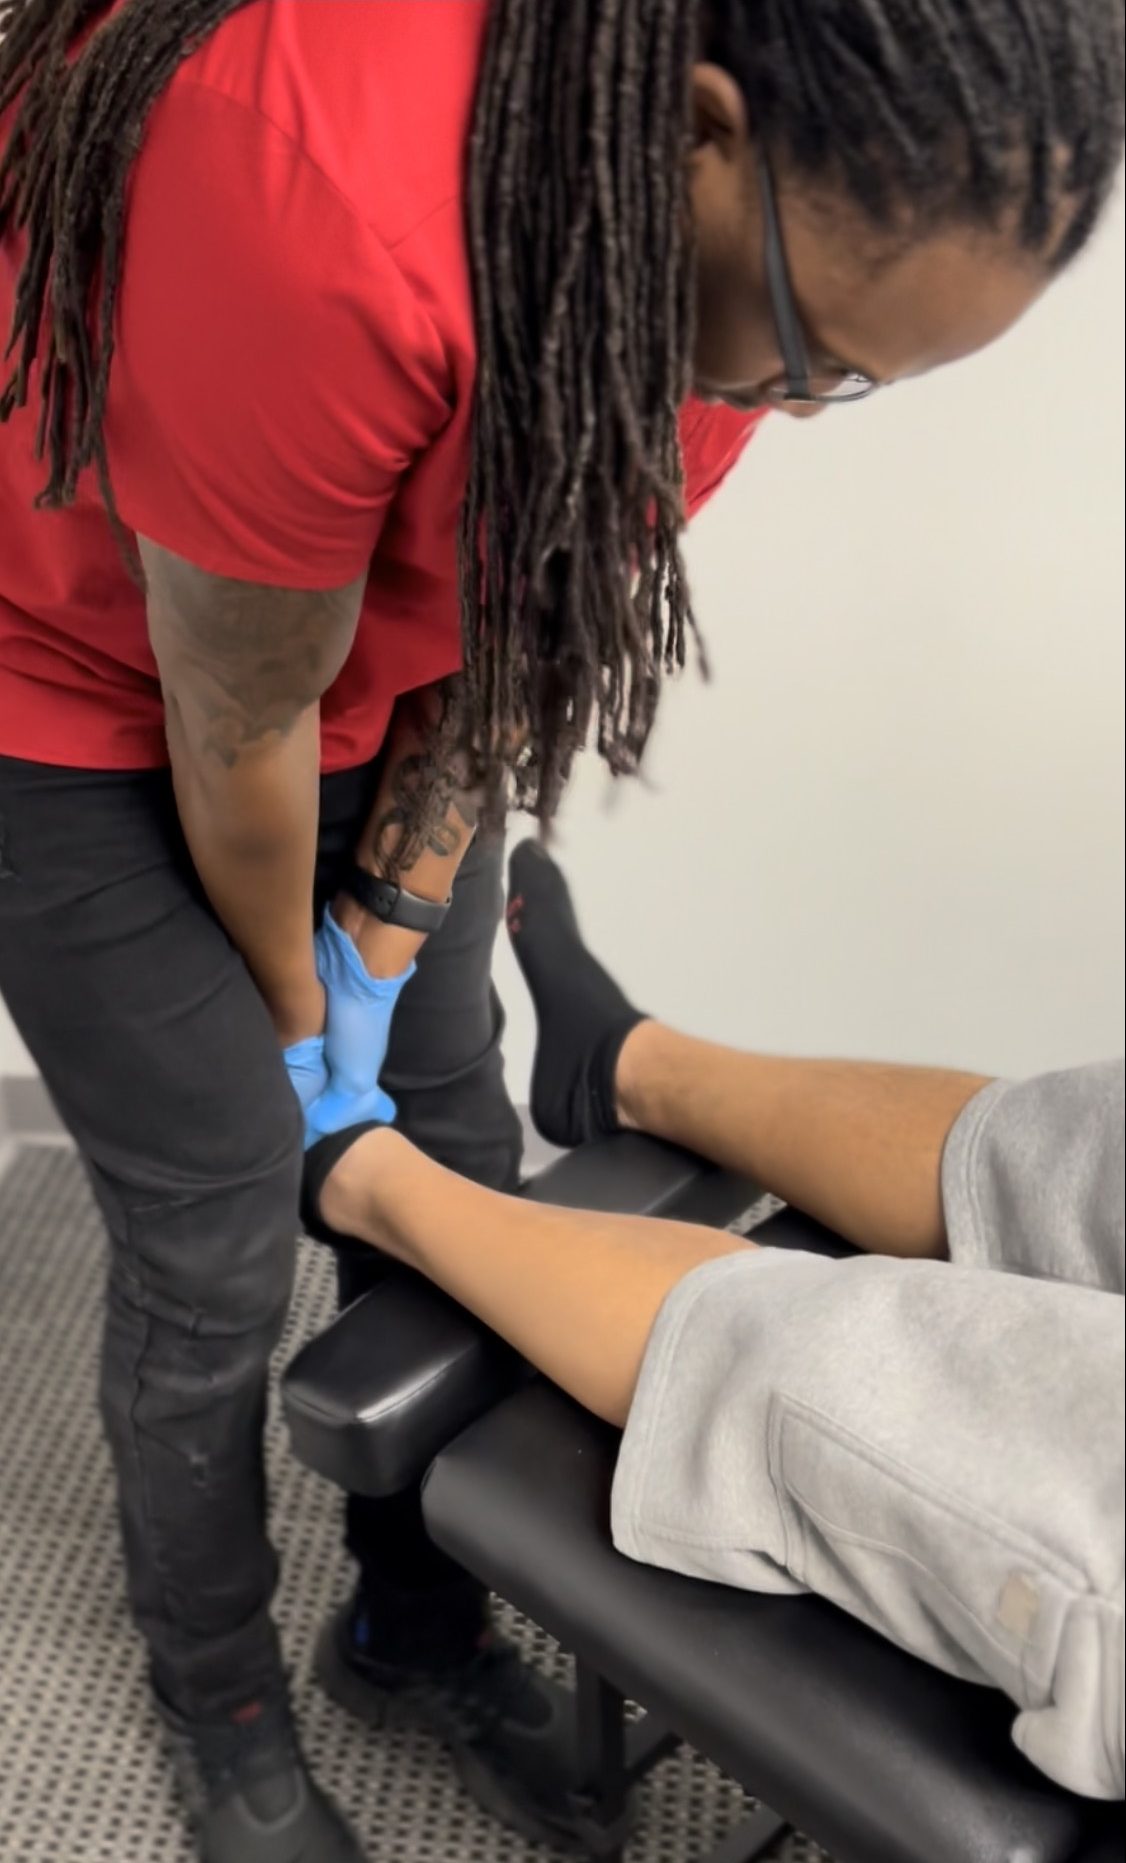 Dr. Bain adjusting patient's ankle